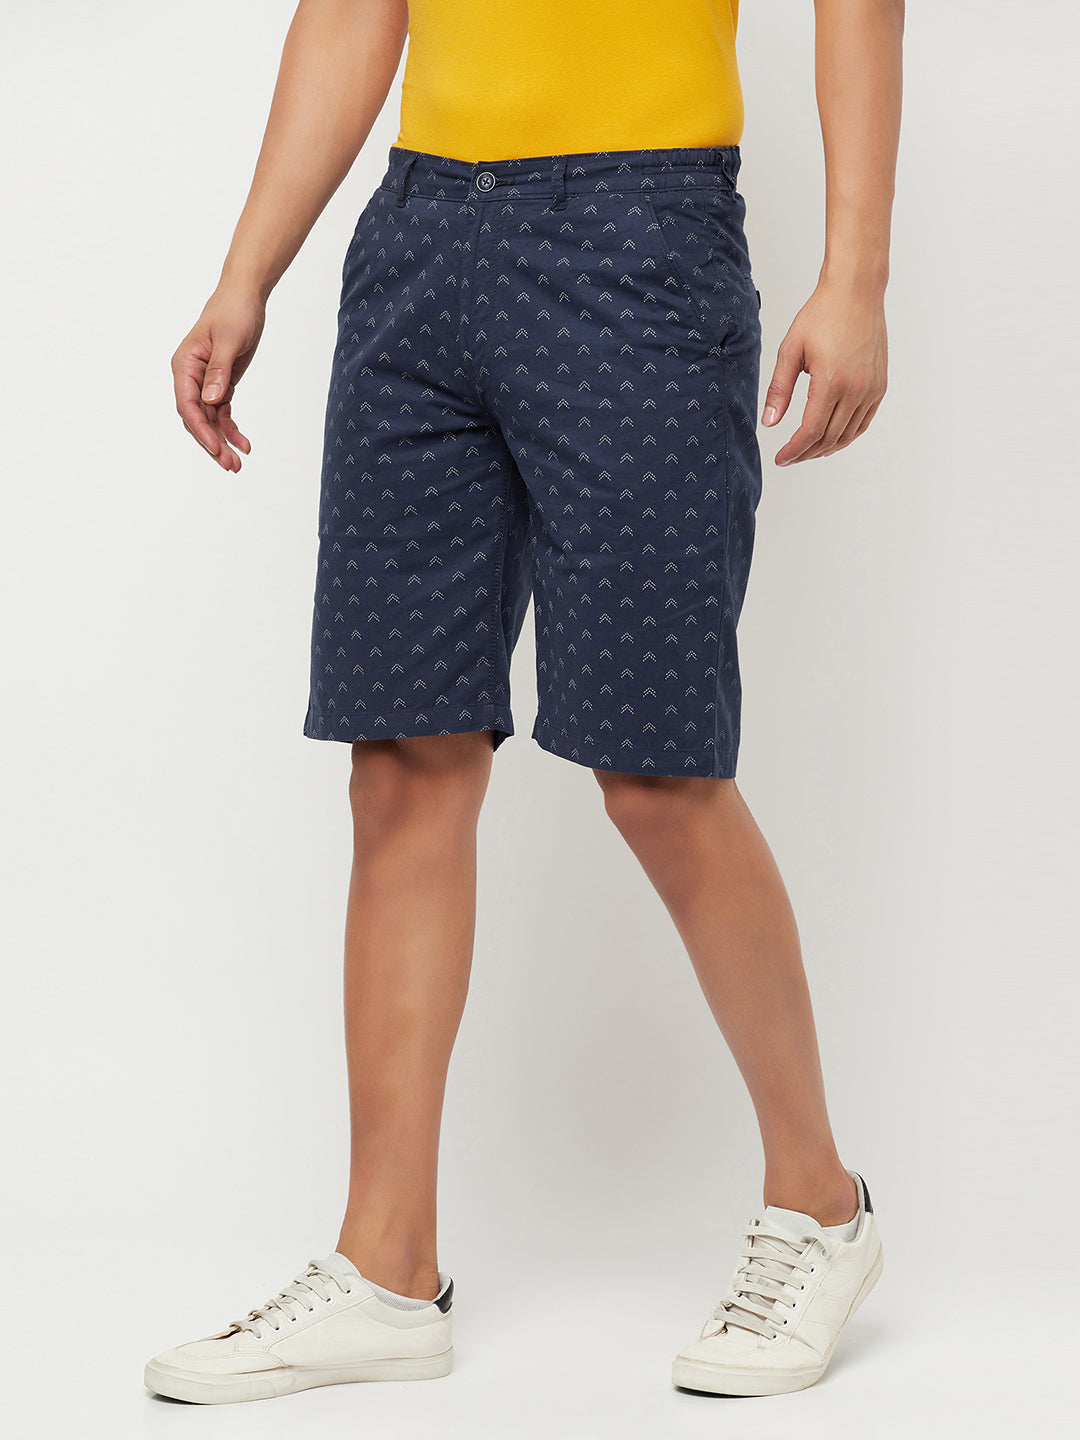 Navy Blue Printed Shorts - Men Shorts